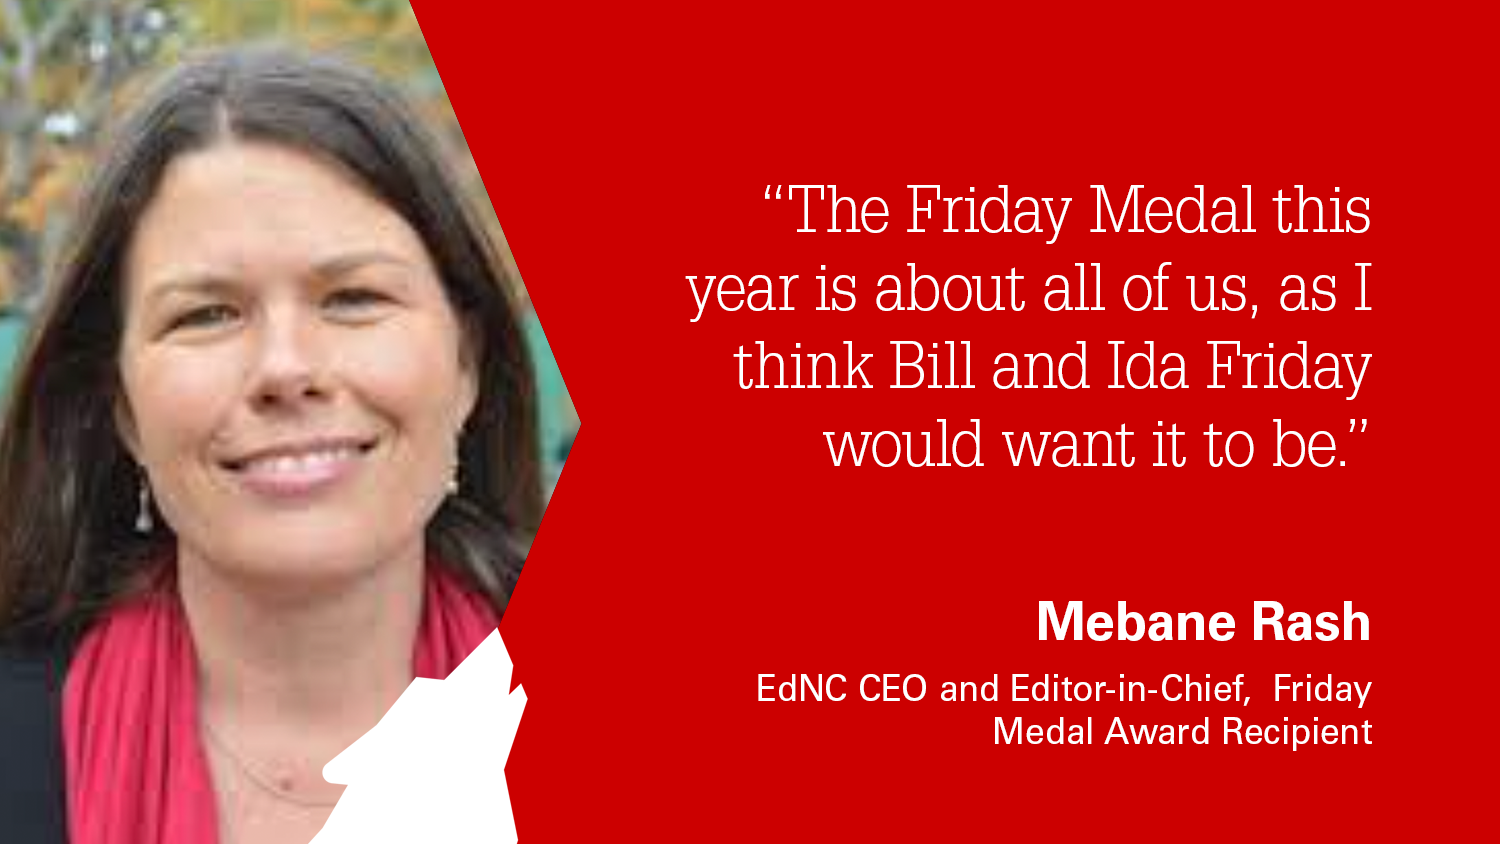 EdNC CEO Mebane Rash was chosen as the 2021 Friday Medal Award Recipient